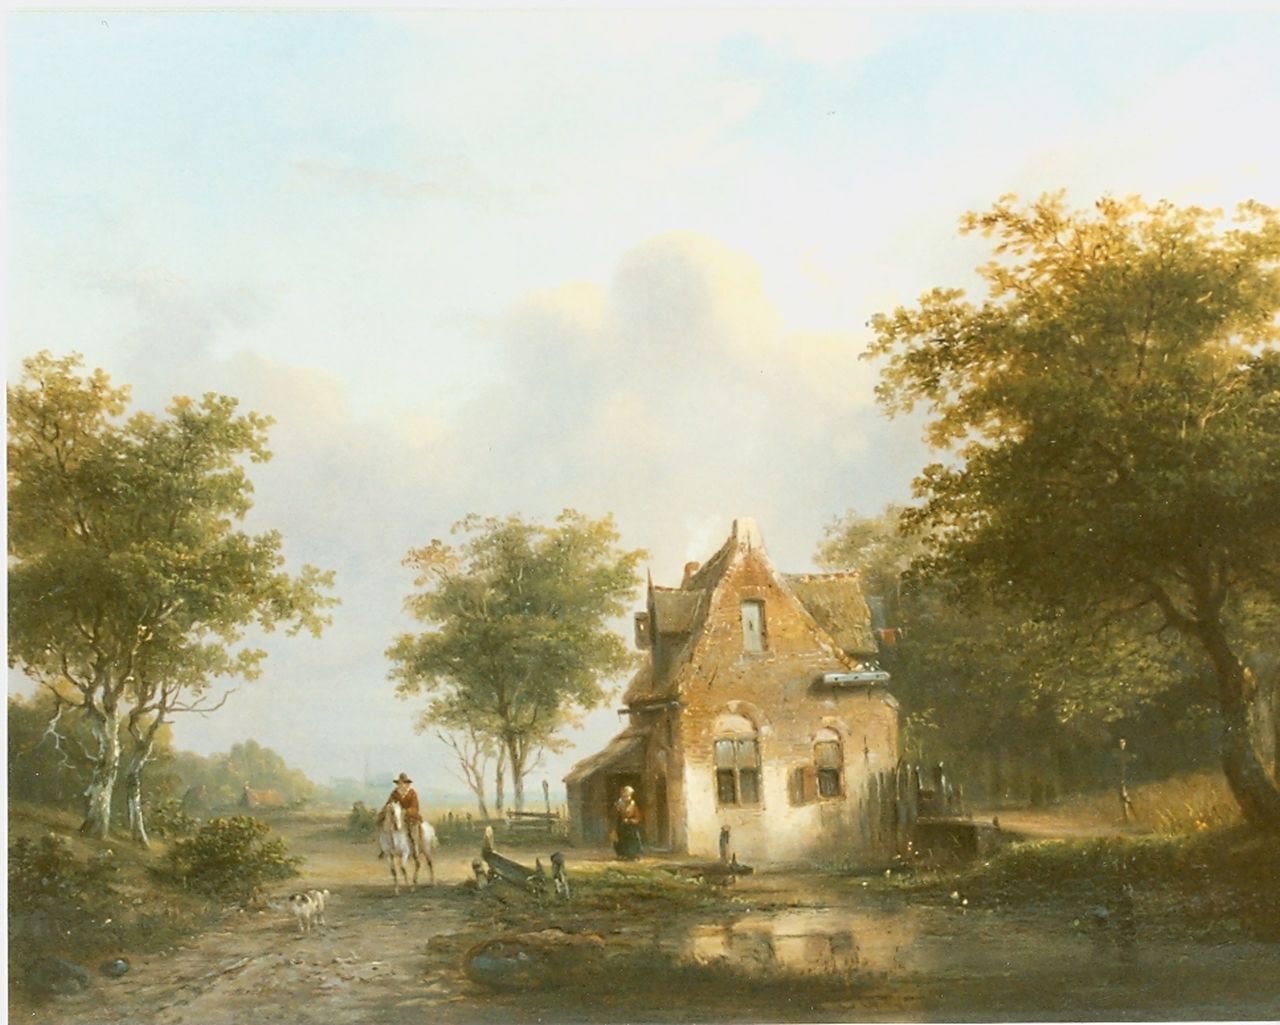 Stok J. van der | Jacobus van der Stok, A wooded landscape in summer, Öl auf Holz 31,0 x 40,5 cm, signed m.o.